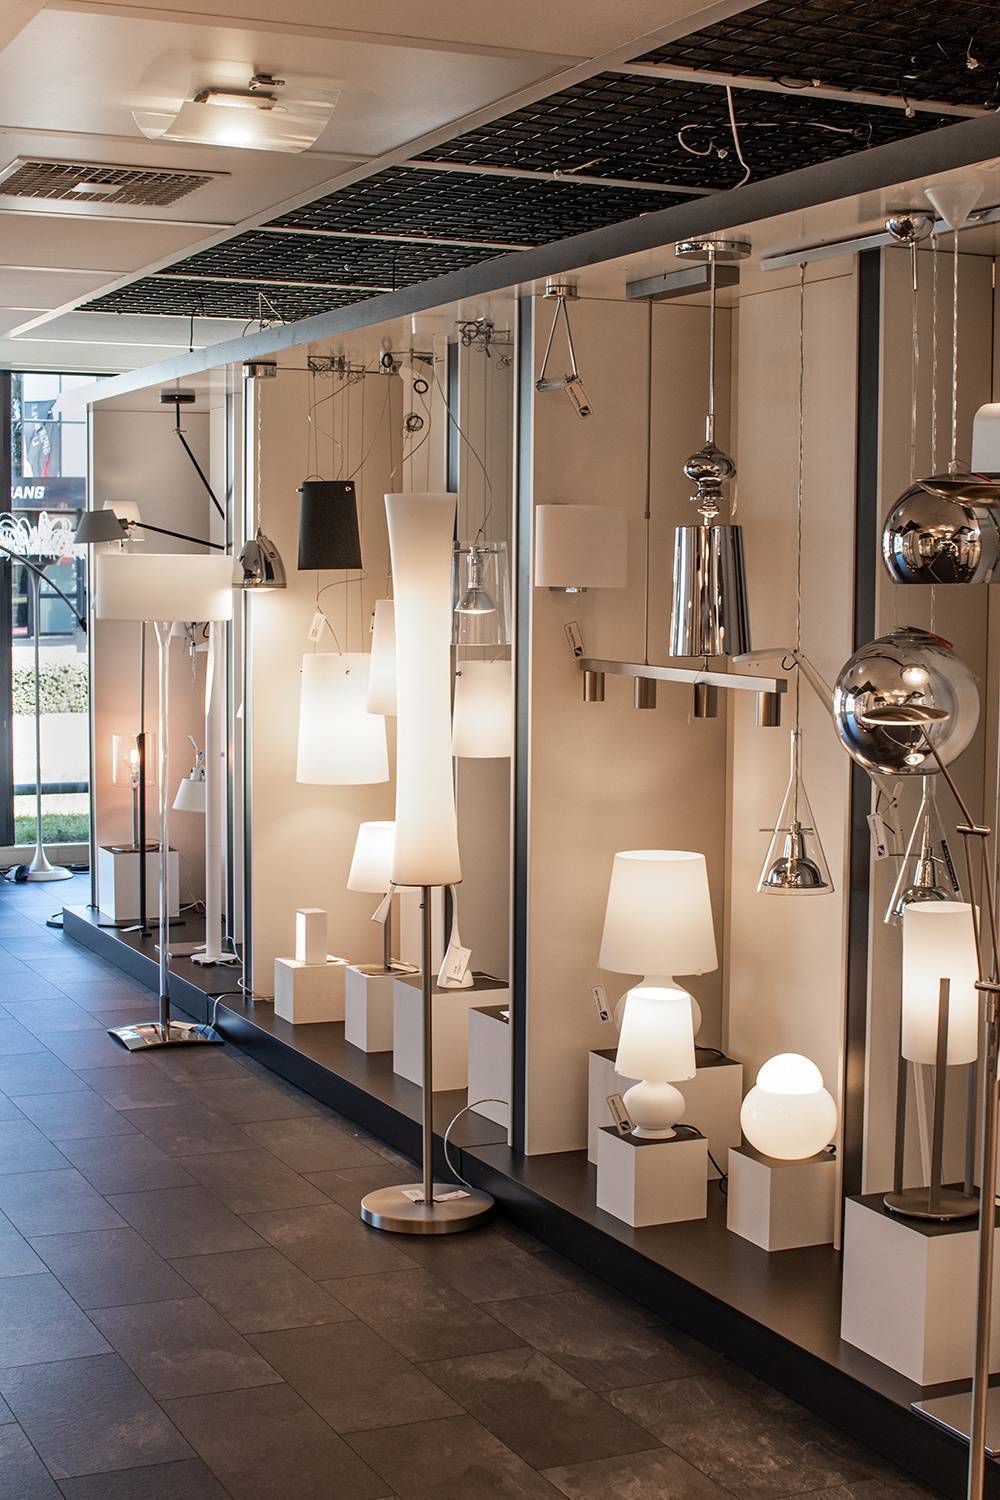 Webo Verlichting is een verlichtingsspeciaalzaak met de grootste verlichtingsshowroom van Nederland. Al meer dan 60 jaar is Webo Verlichting gespecialiseerd in de advisering en verkoop van verlichtingsarmaturen. Webo vertegenwoordigt meer dan 60 merken lampen. De lampen worden online verkocht of in de showroom waar de verlichtingsexperts van Webo u helpen met uw Lichtplan.